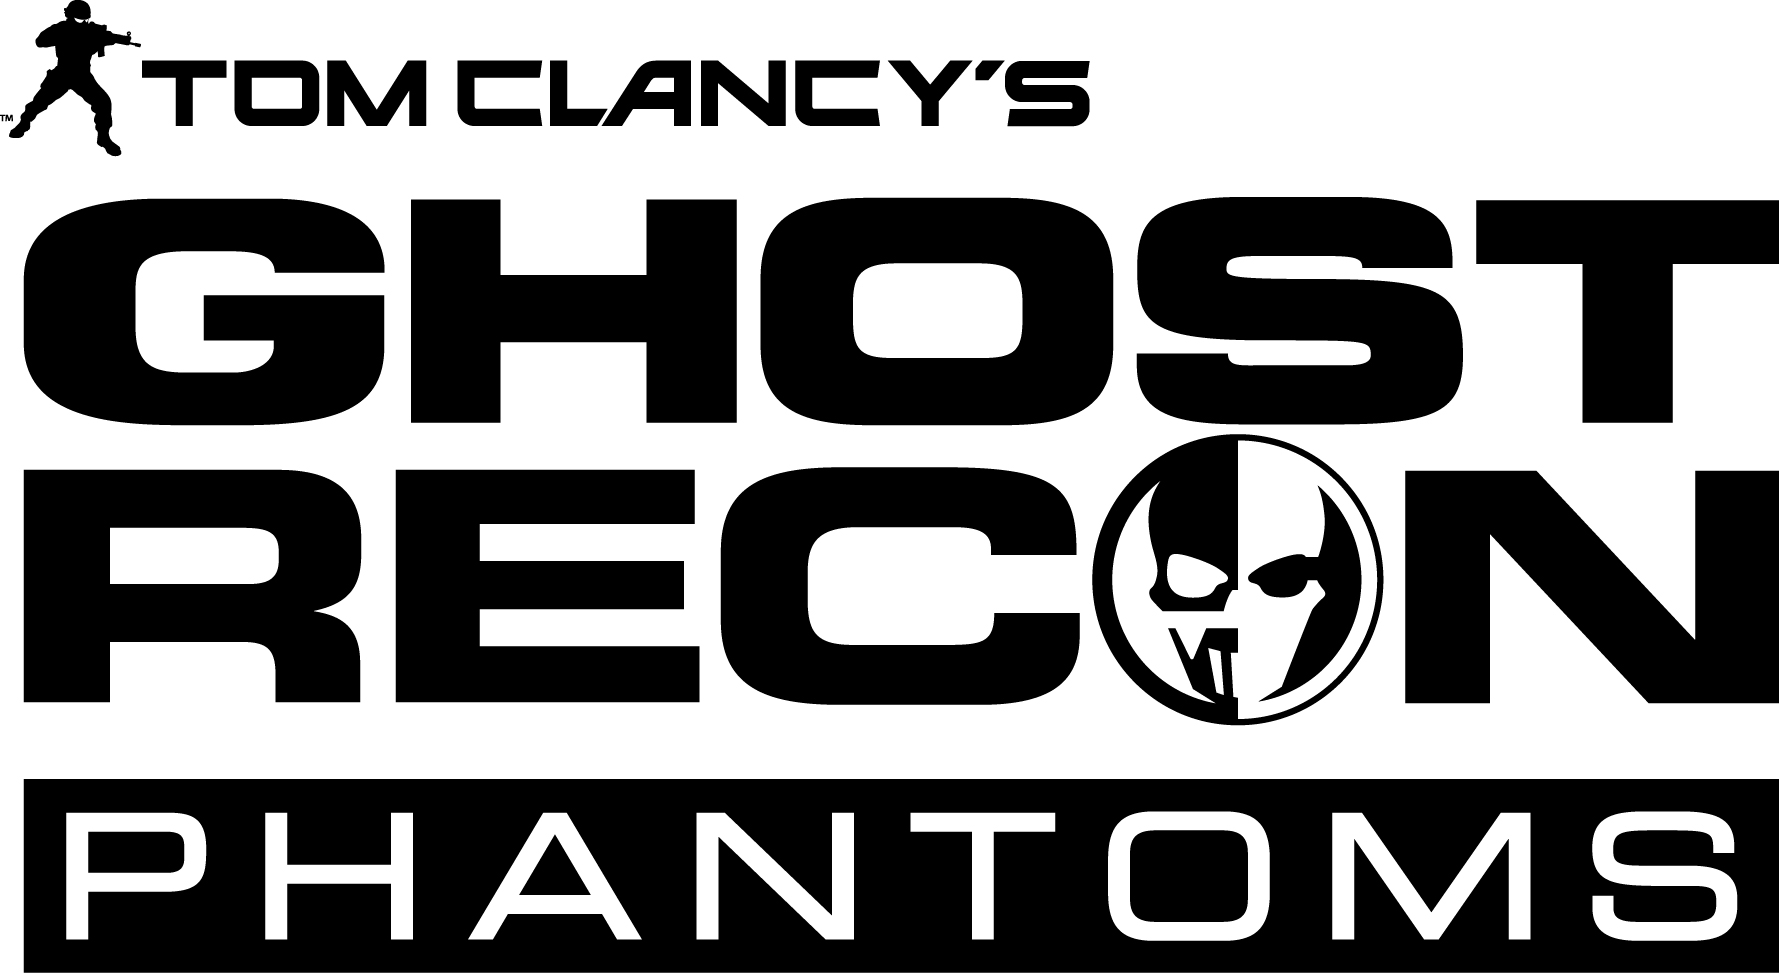 Tom Clancy’s Ghost Recon Phantoms – Ab dem 10. April geht es los